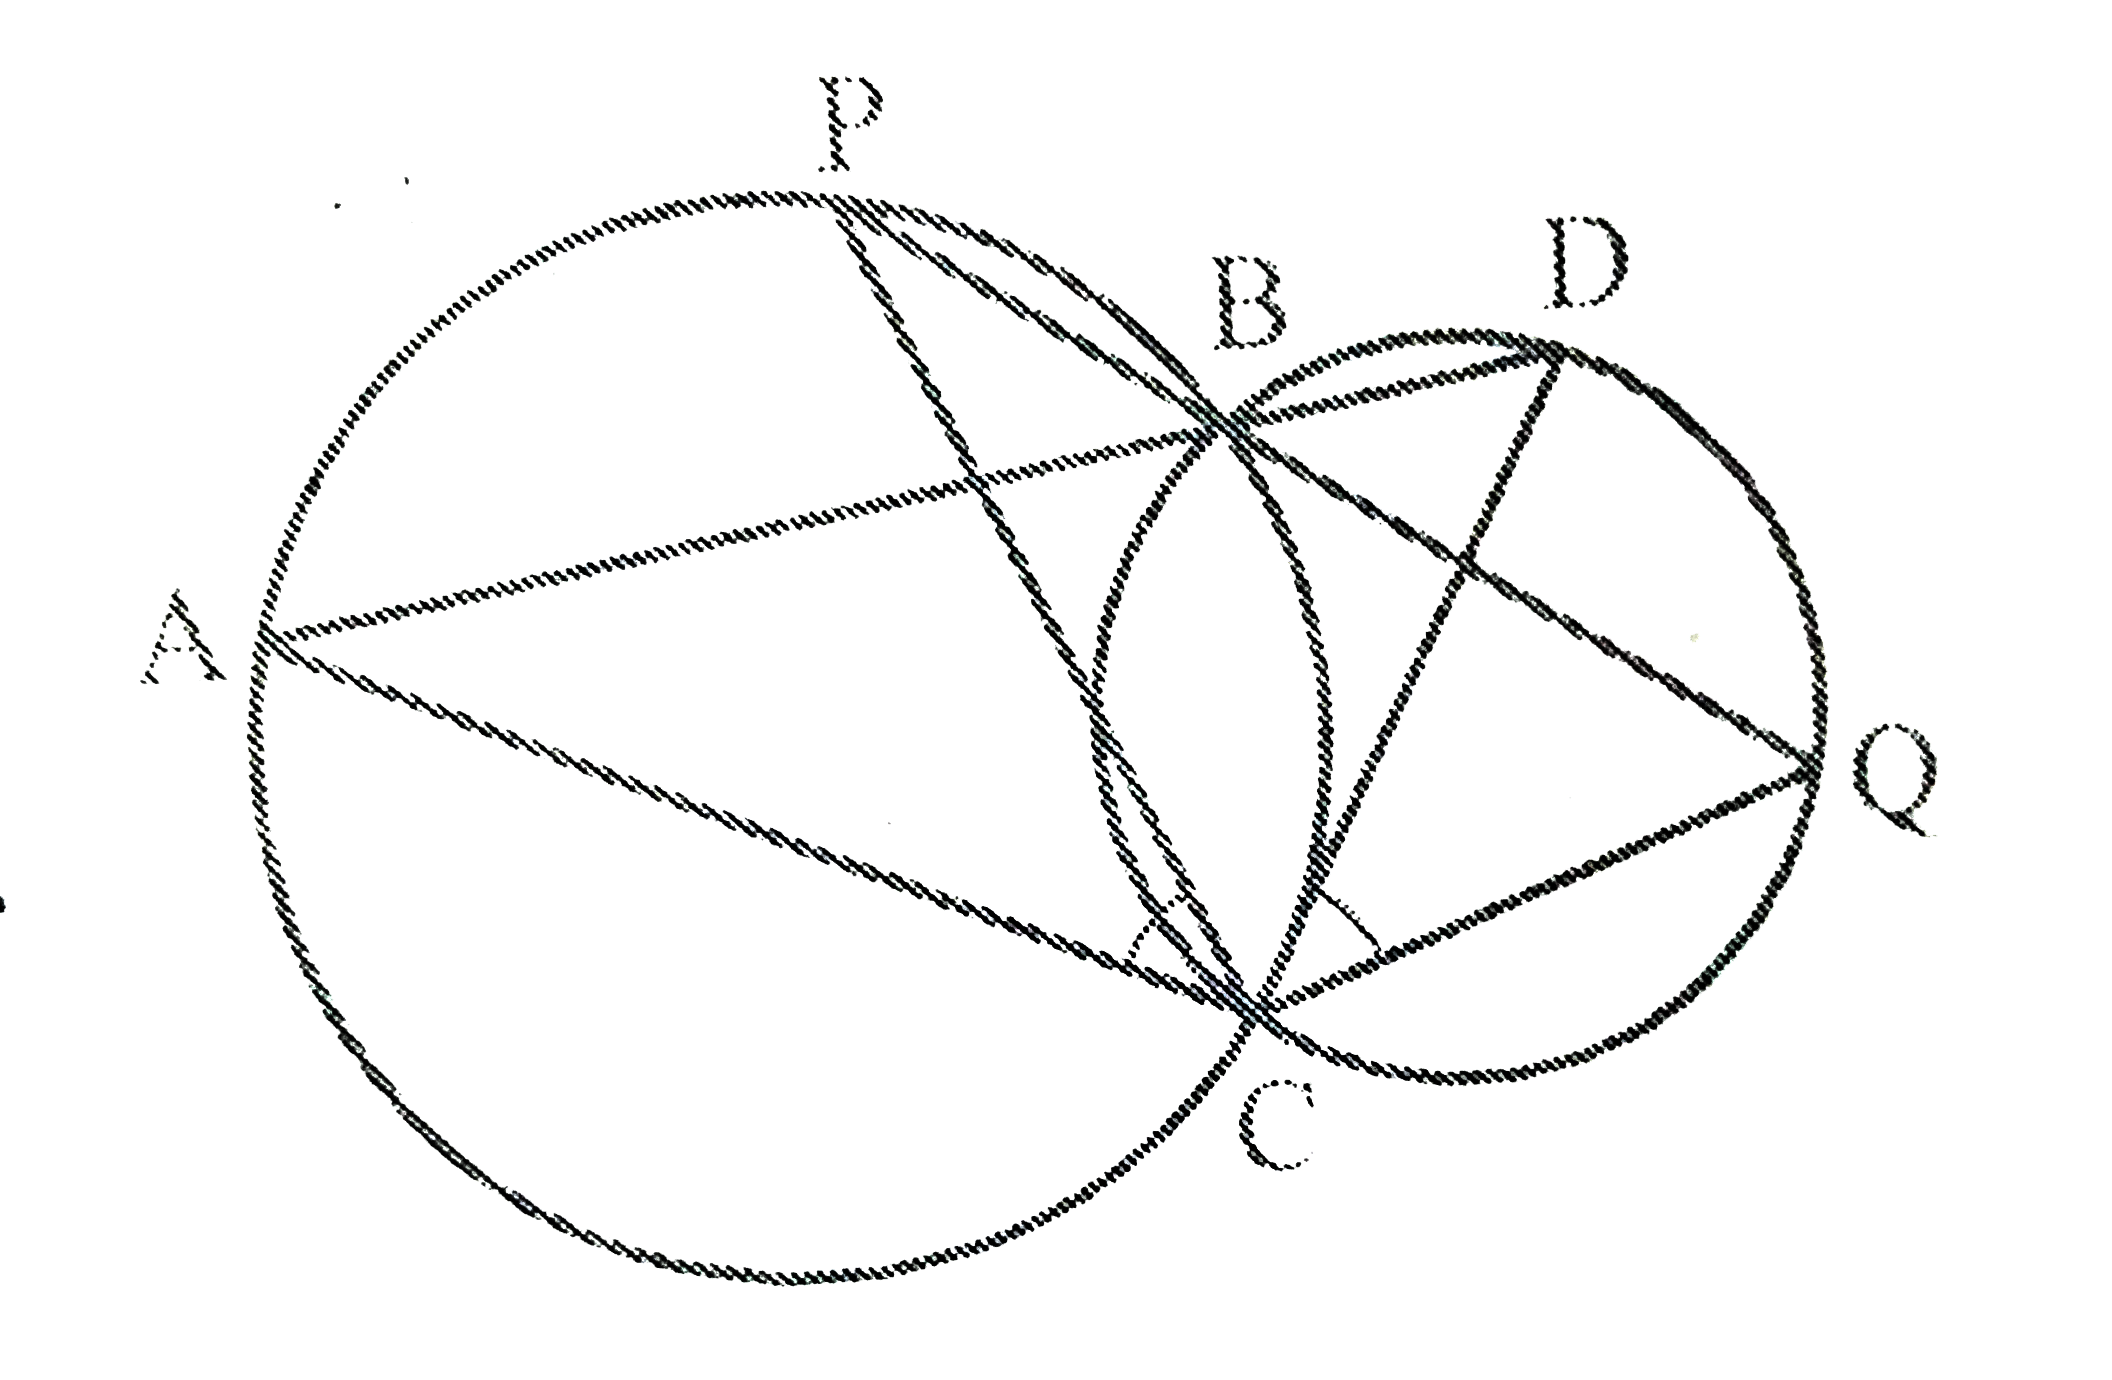 दो वृत्त दो बिंदुओं B और C पर प्रतिच्छेद करते है । B से जाने वाले तो रेखाखंड ABD  और PBQ वृत्तों को A , D और P , Q पर क्रमशः प्रतिच्छेद करते हुए खींचे गए है । सिद्ध कीजिए कि angleACP=angleQCD है।